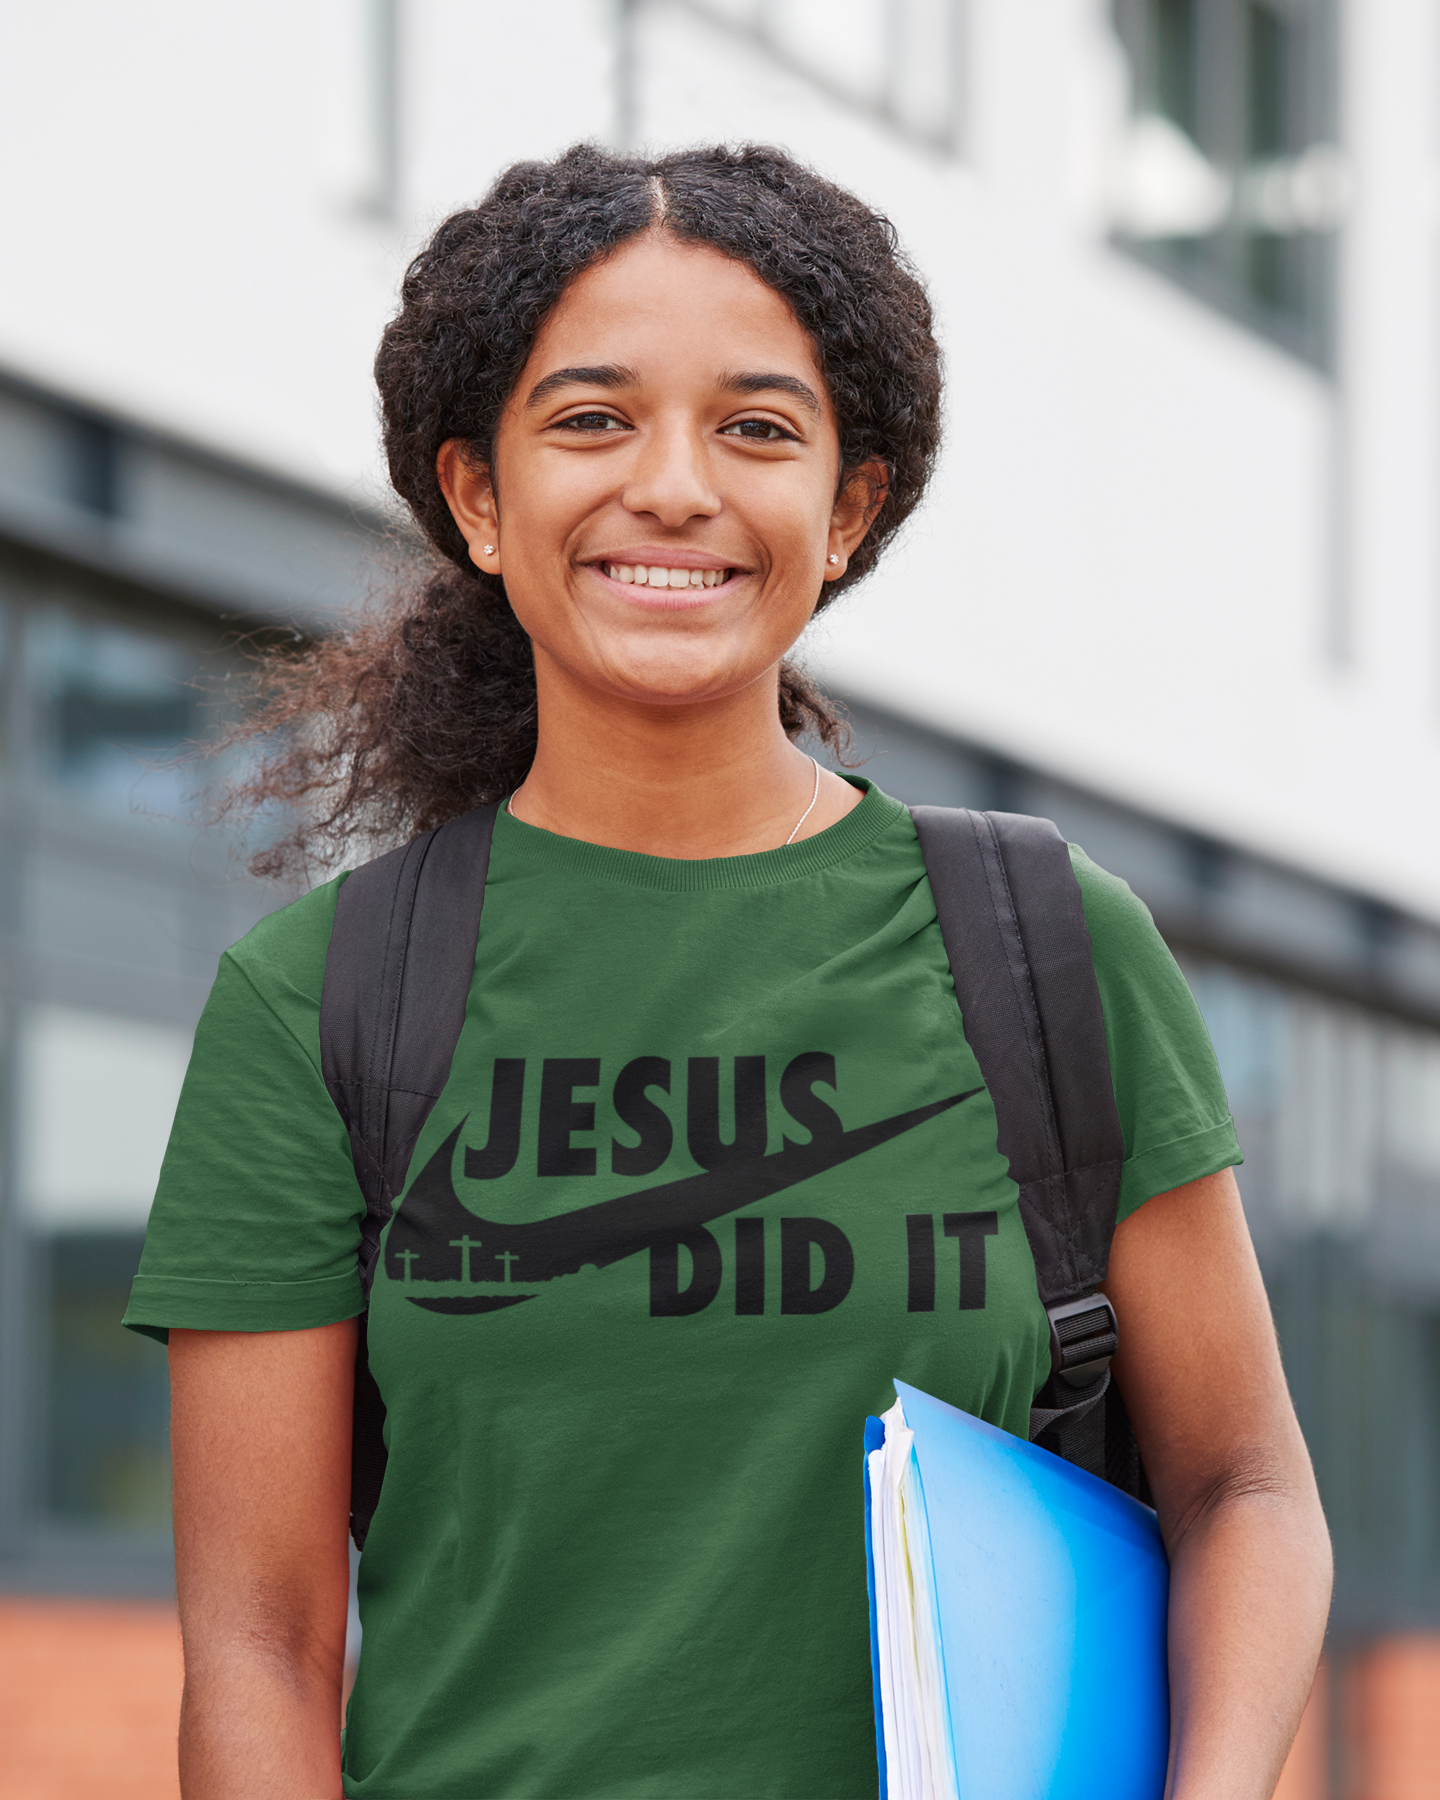 Jesus Did It T-Shirt, Sweatshirt, Hoodie - Wilson Design Group